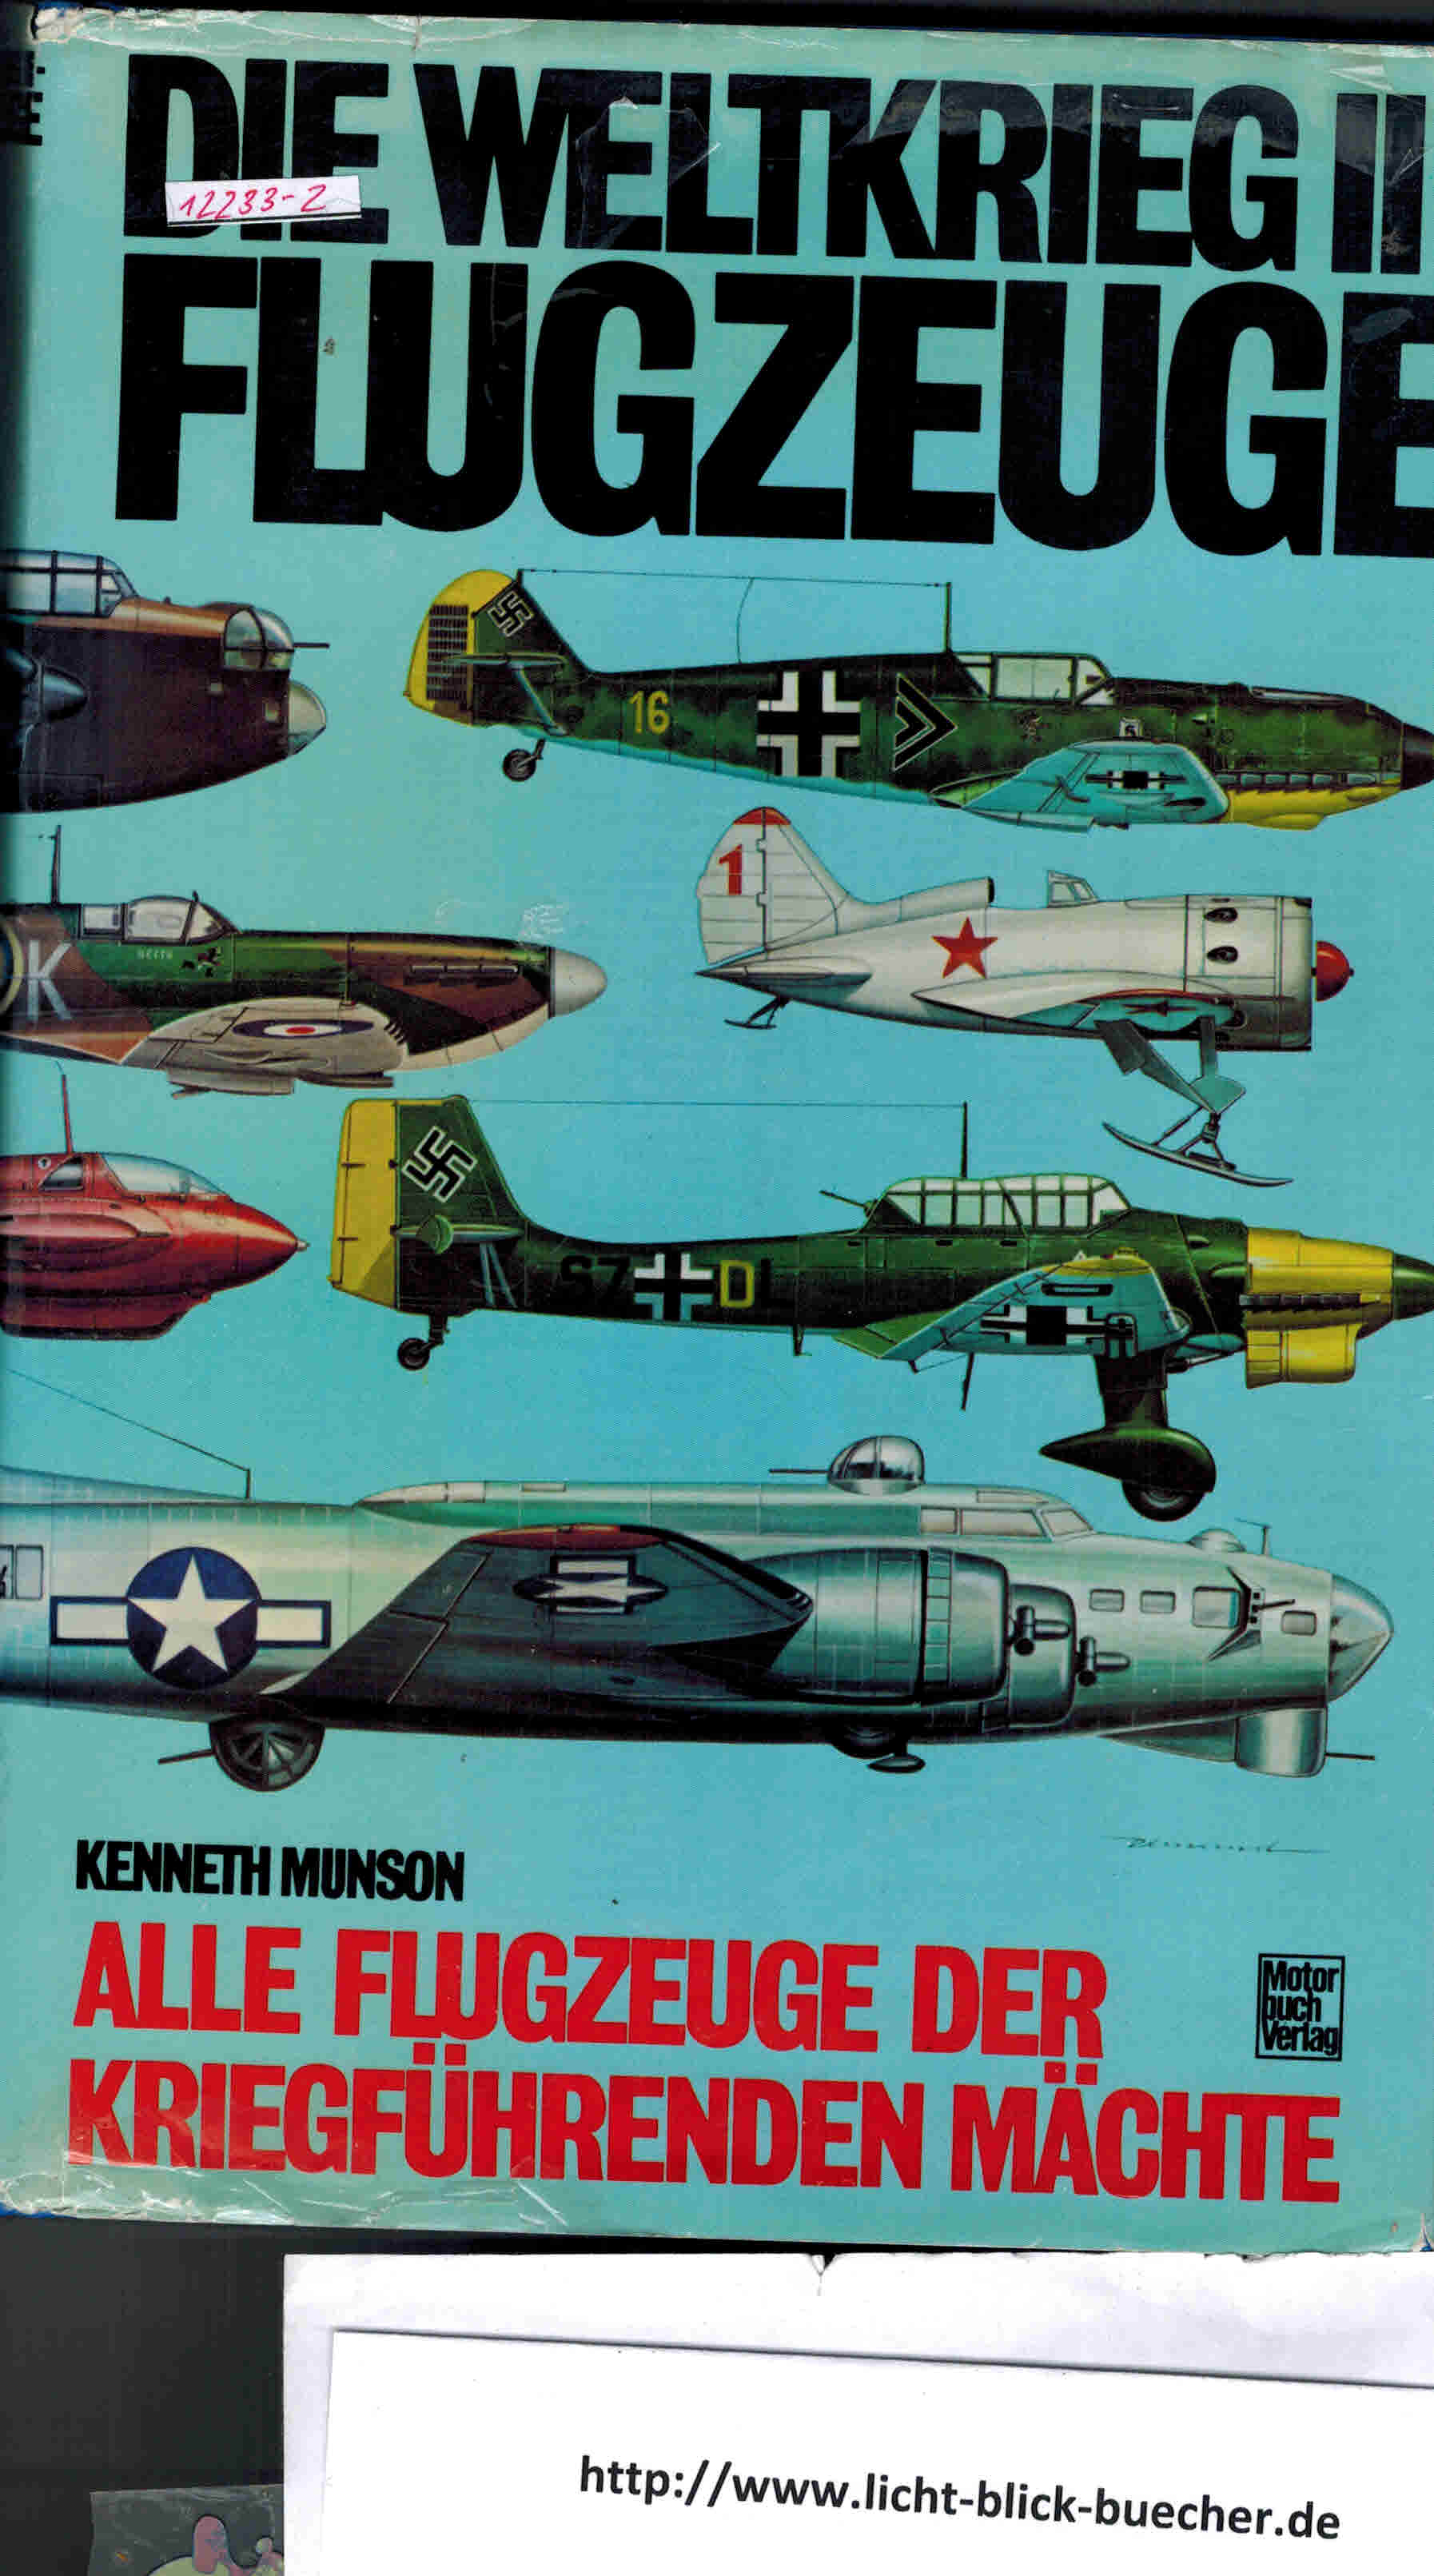 Die Weltkrieg-II-Flugzeuge  Alle Flugzeuge der kriegfuehrenden MaechteKenneth Munson